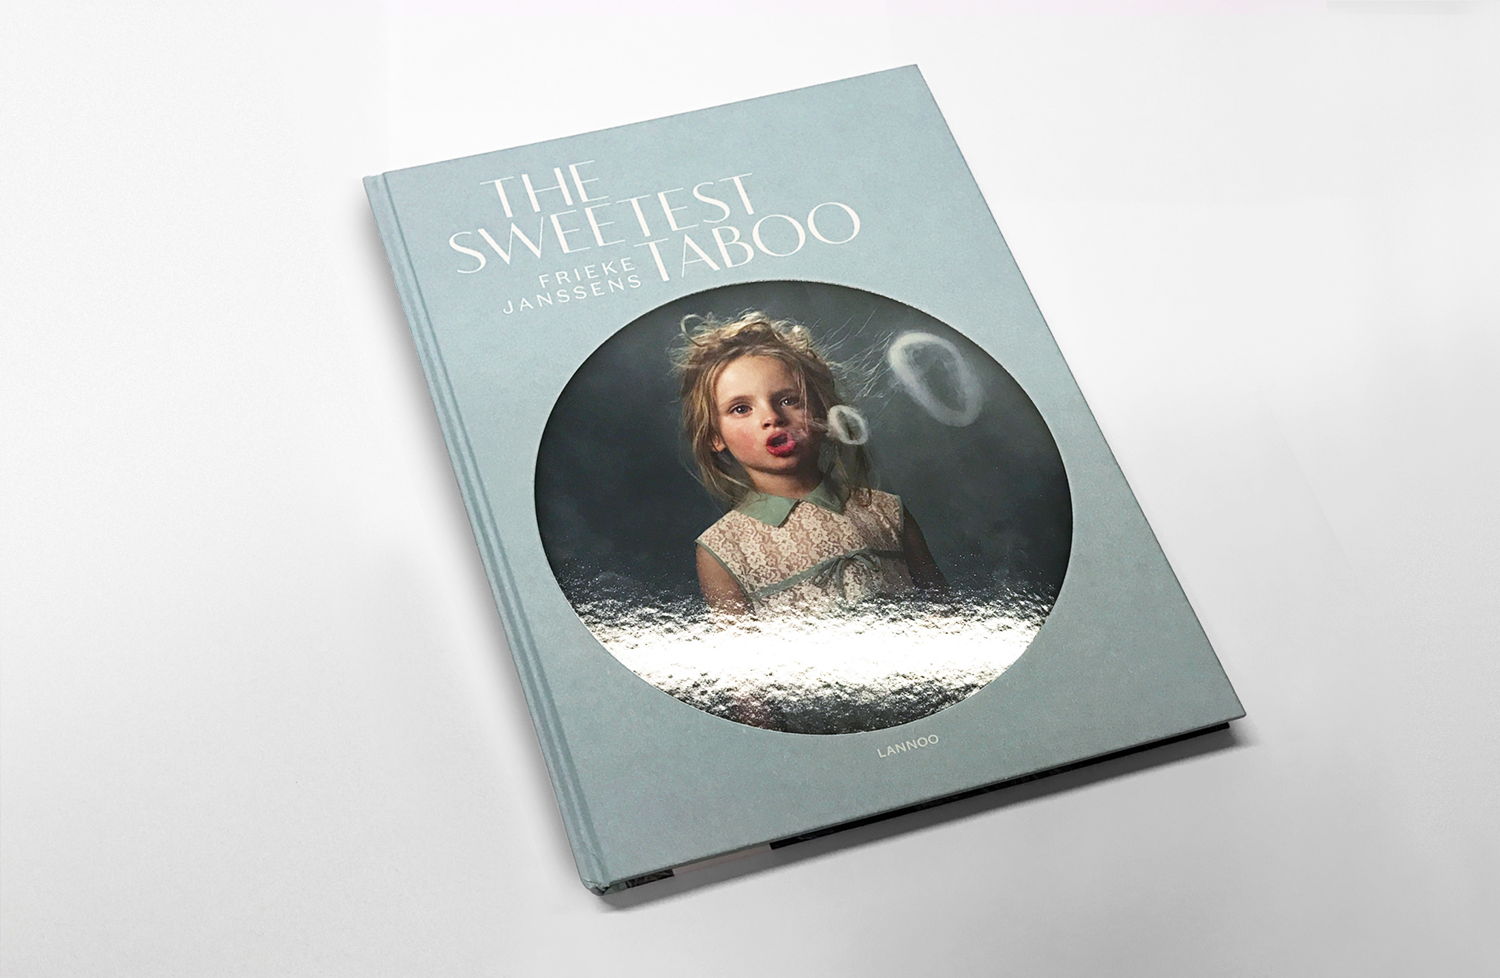 The Sweetest Taboo, grafische vormgeving Superset, uitgeverij Lannoo. Foto: Superset. (c) werk van Frieke Janssens